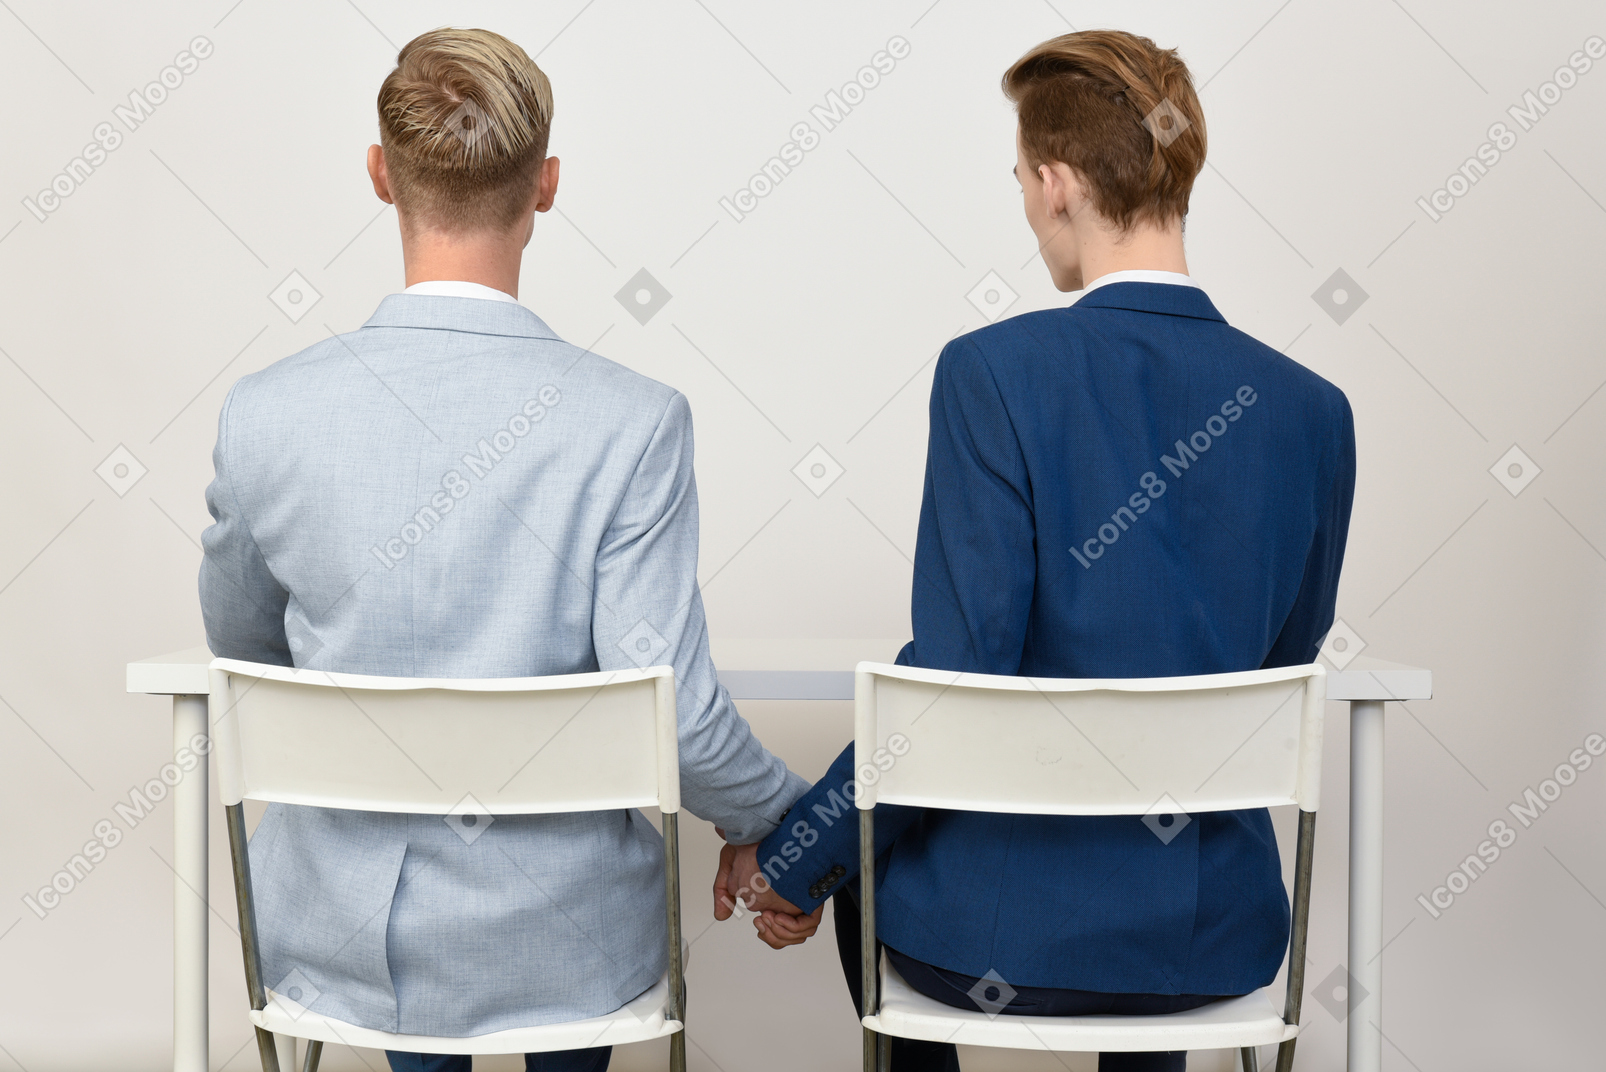 握手的两个男性同事在桌下